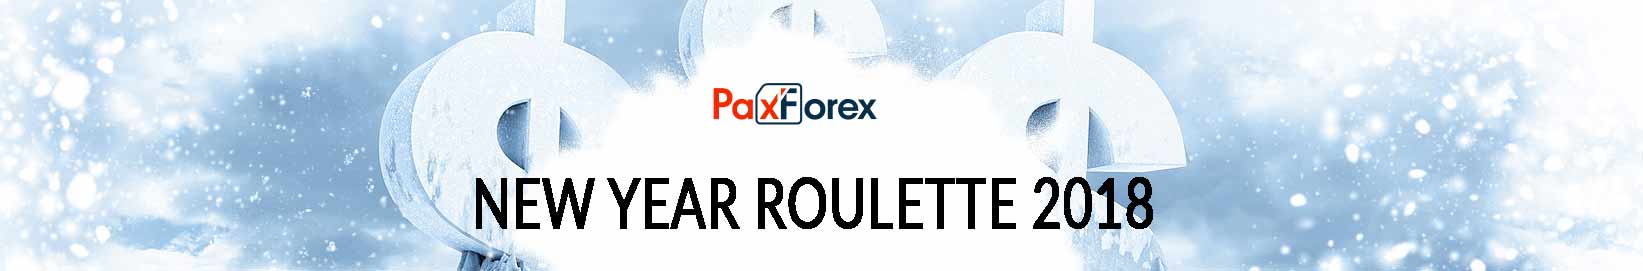 PaxForex newyear 2018 promotion